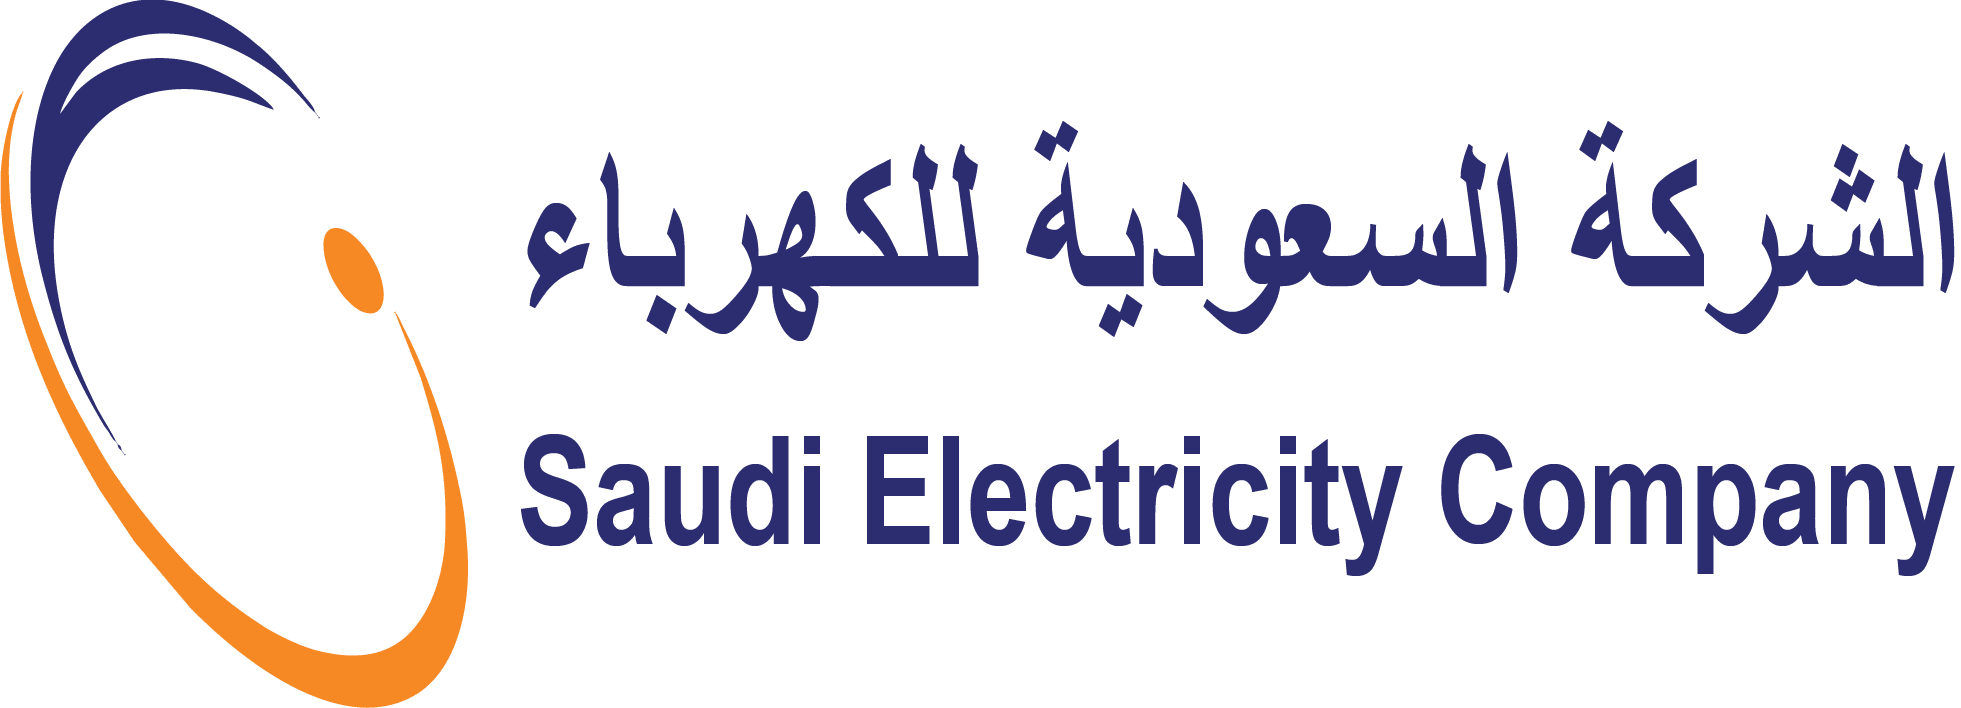 موقع الشركة السعودية للكهرباء